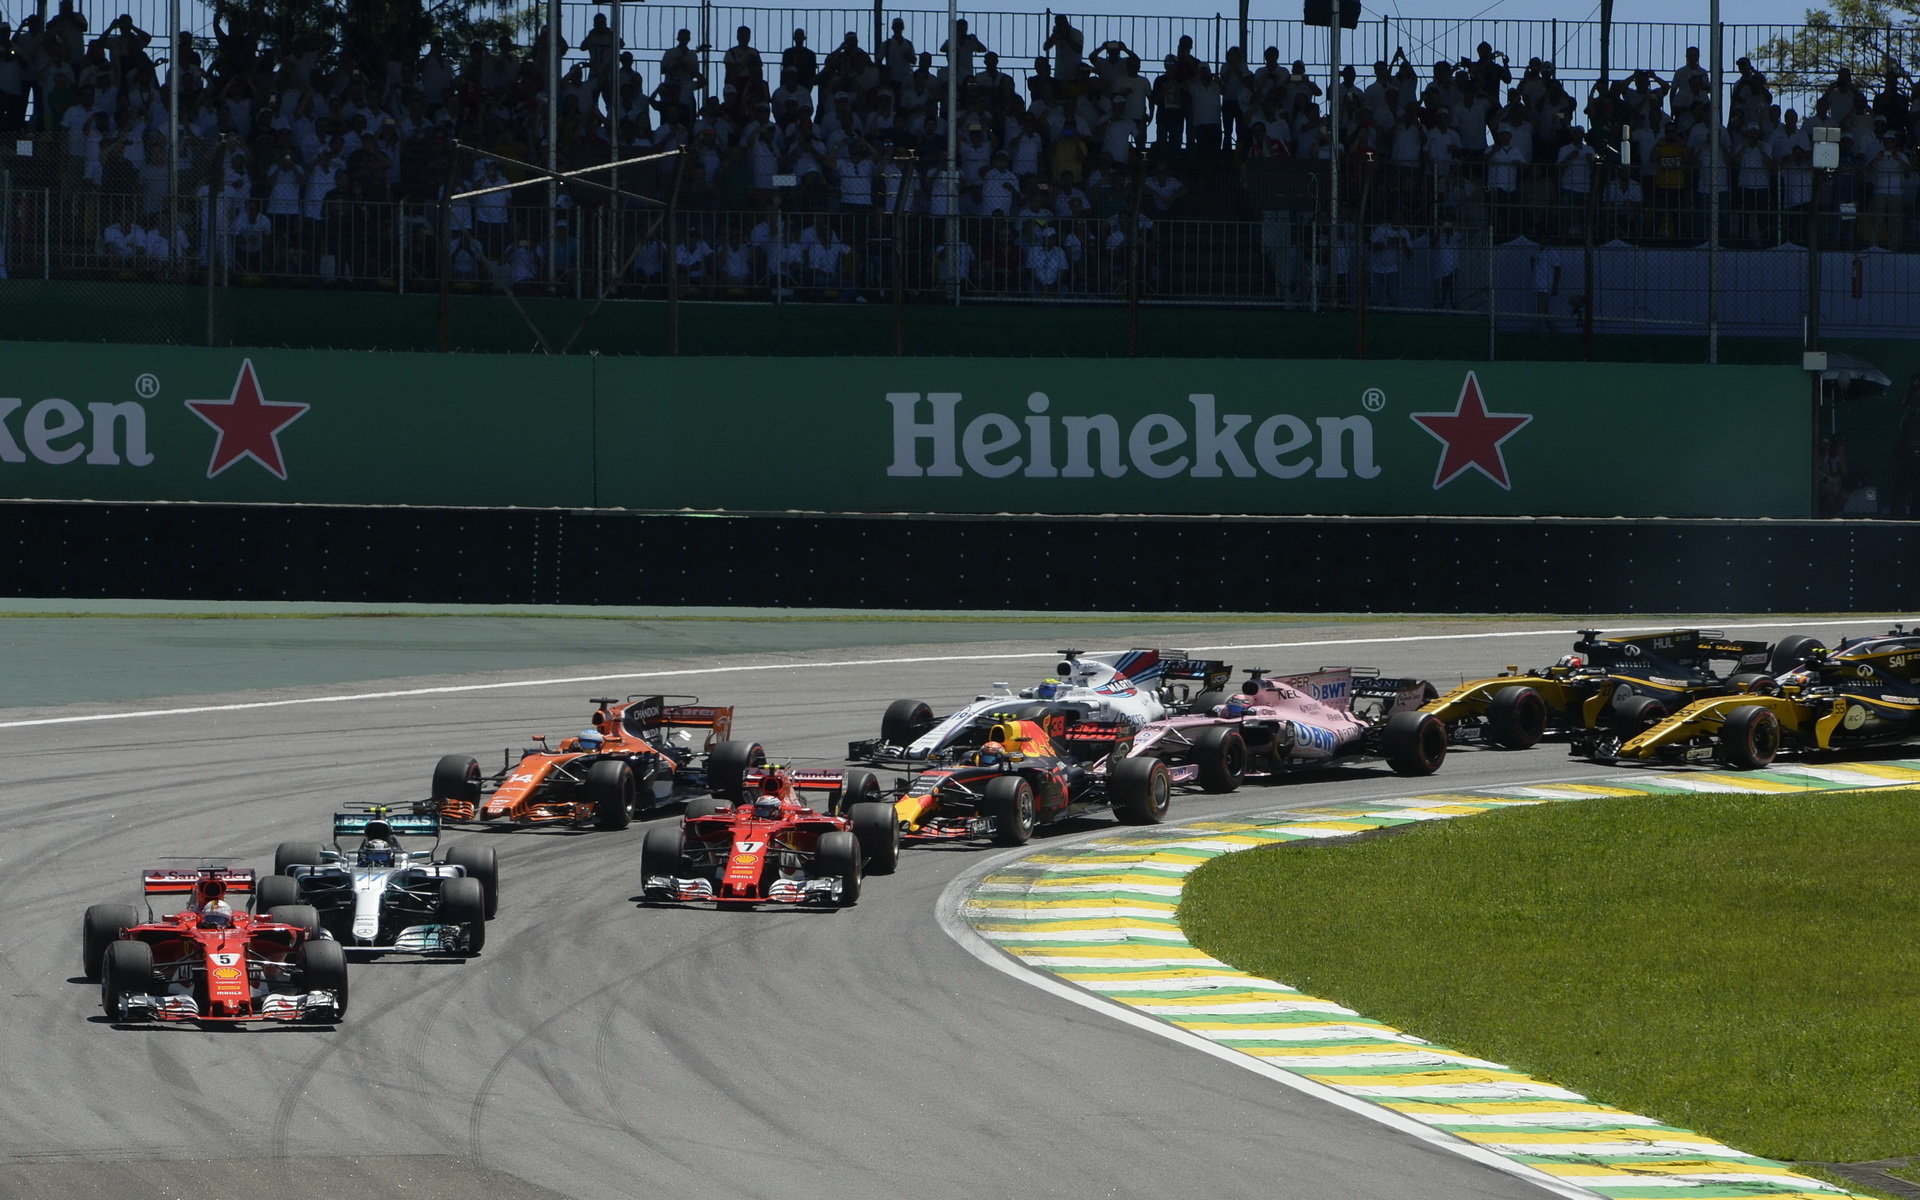 Sebastian Vettel, Valtteri Bottas a Kimi Räikkönen po startu závodu v Brazílii